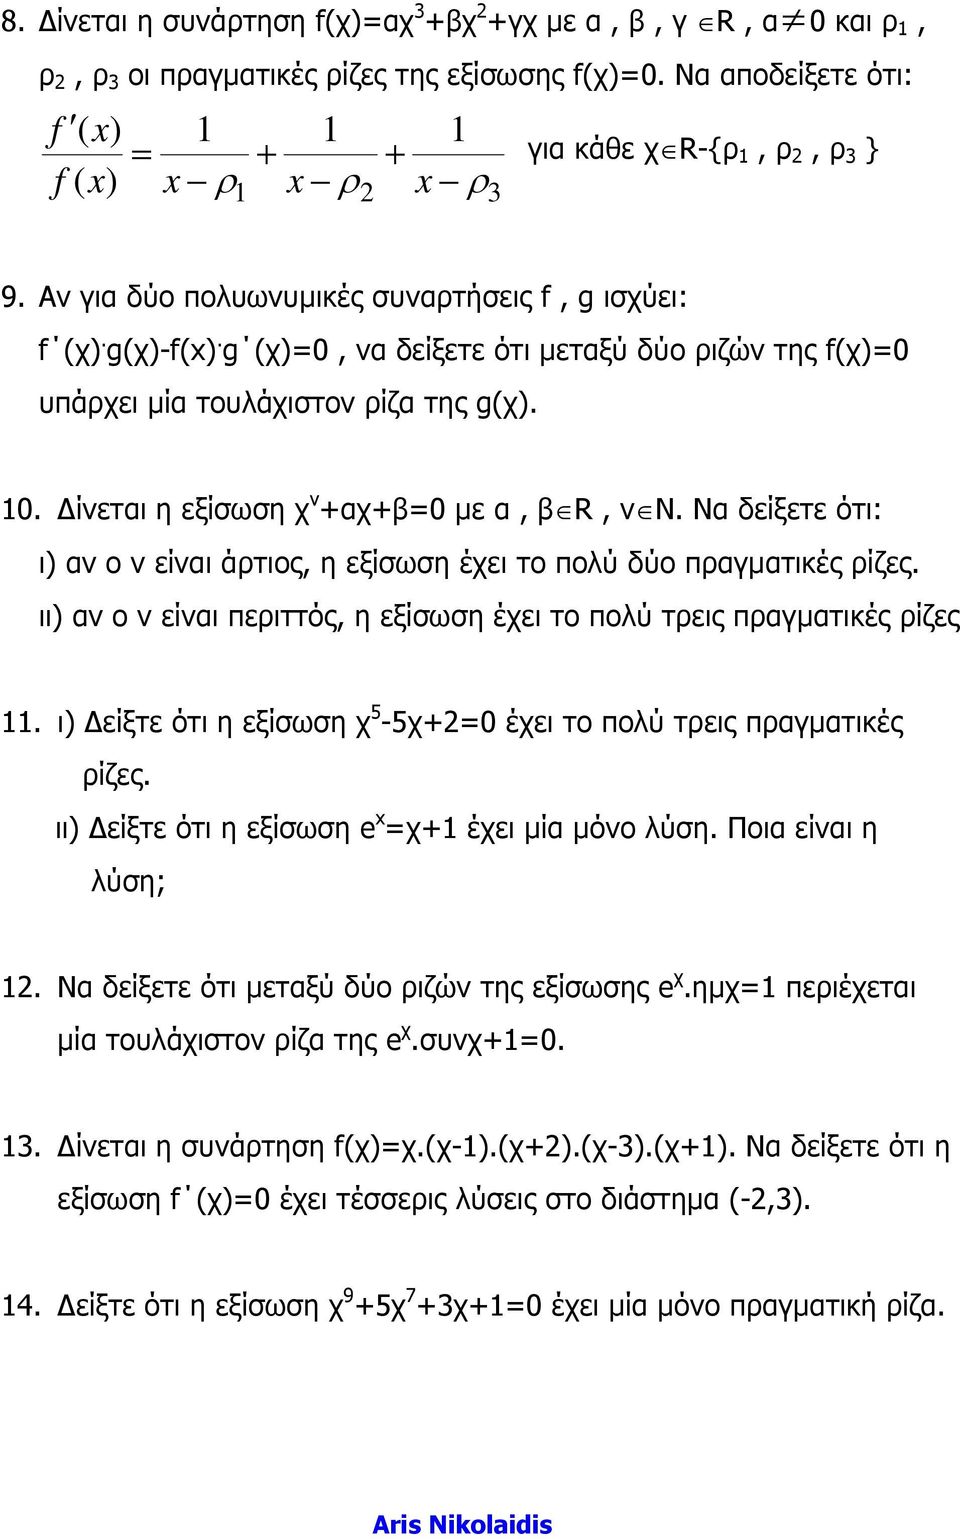 ίνεται η εξίσωση χ ν +αχ+β=0 µε α, β R, ν Ν. Να δείξετε ότι: ι) αν ο ν είναι άτιος, η εξίσωση έχει το πολύ δύο παγµατικές ίζες.